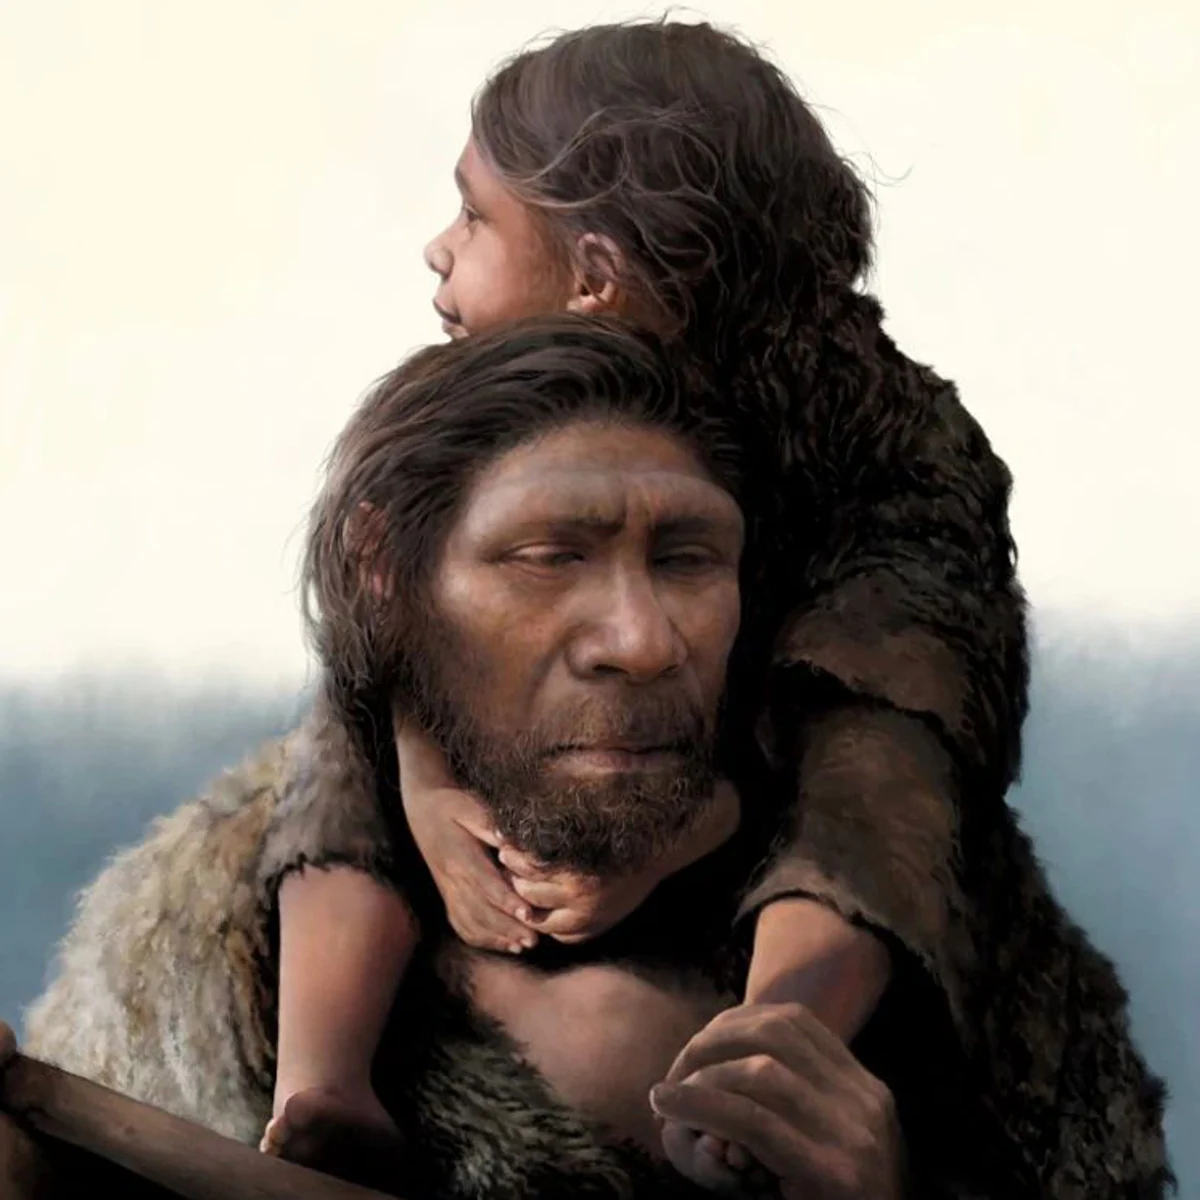 La ilustración muestra a un neandertal con su hija